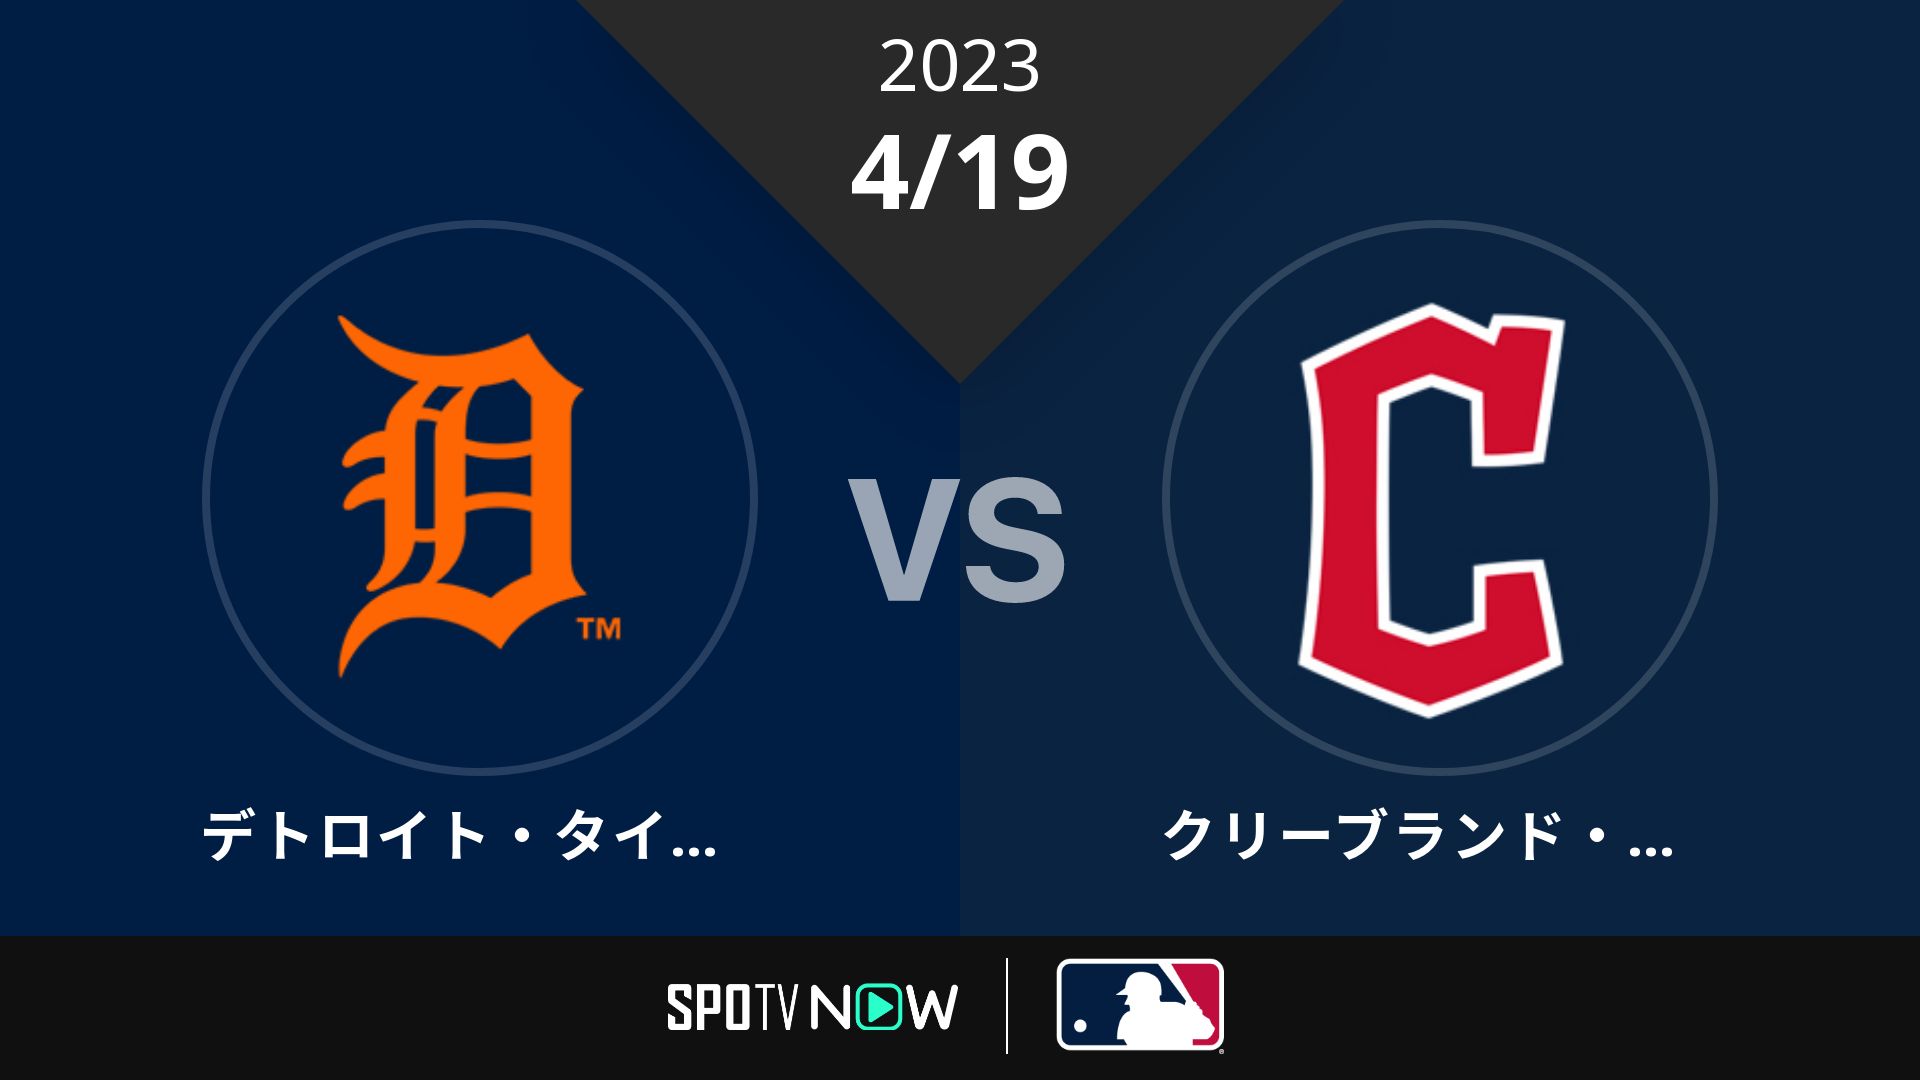 2023/4/19 タイガース vs ガーディアンズ [MLB]